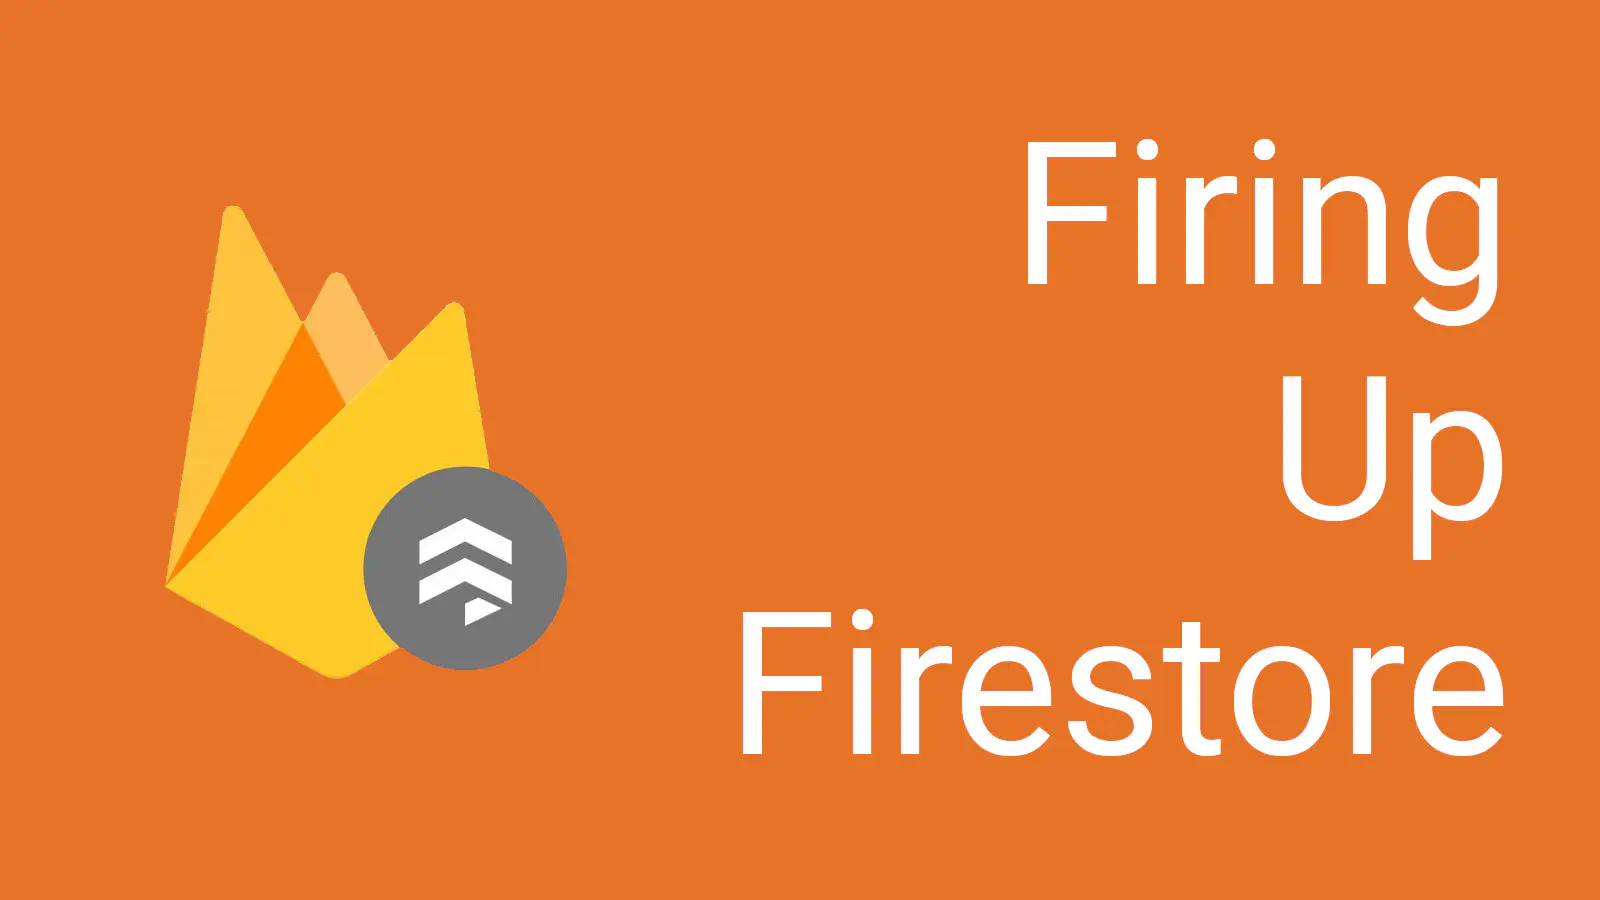 Firing Up Firestore